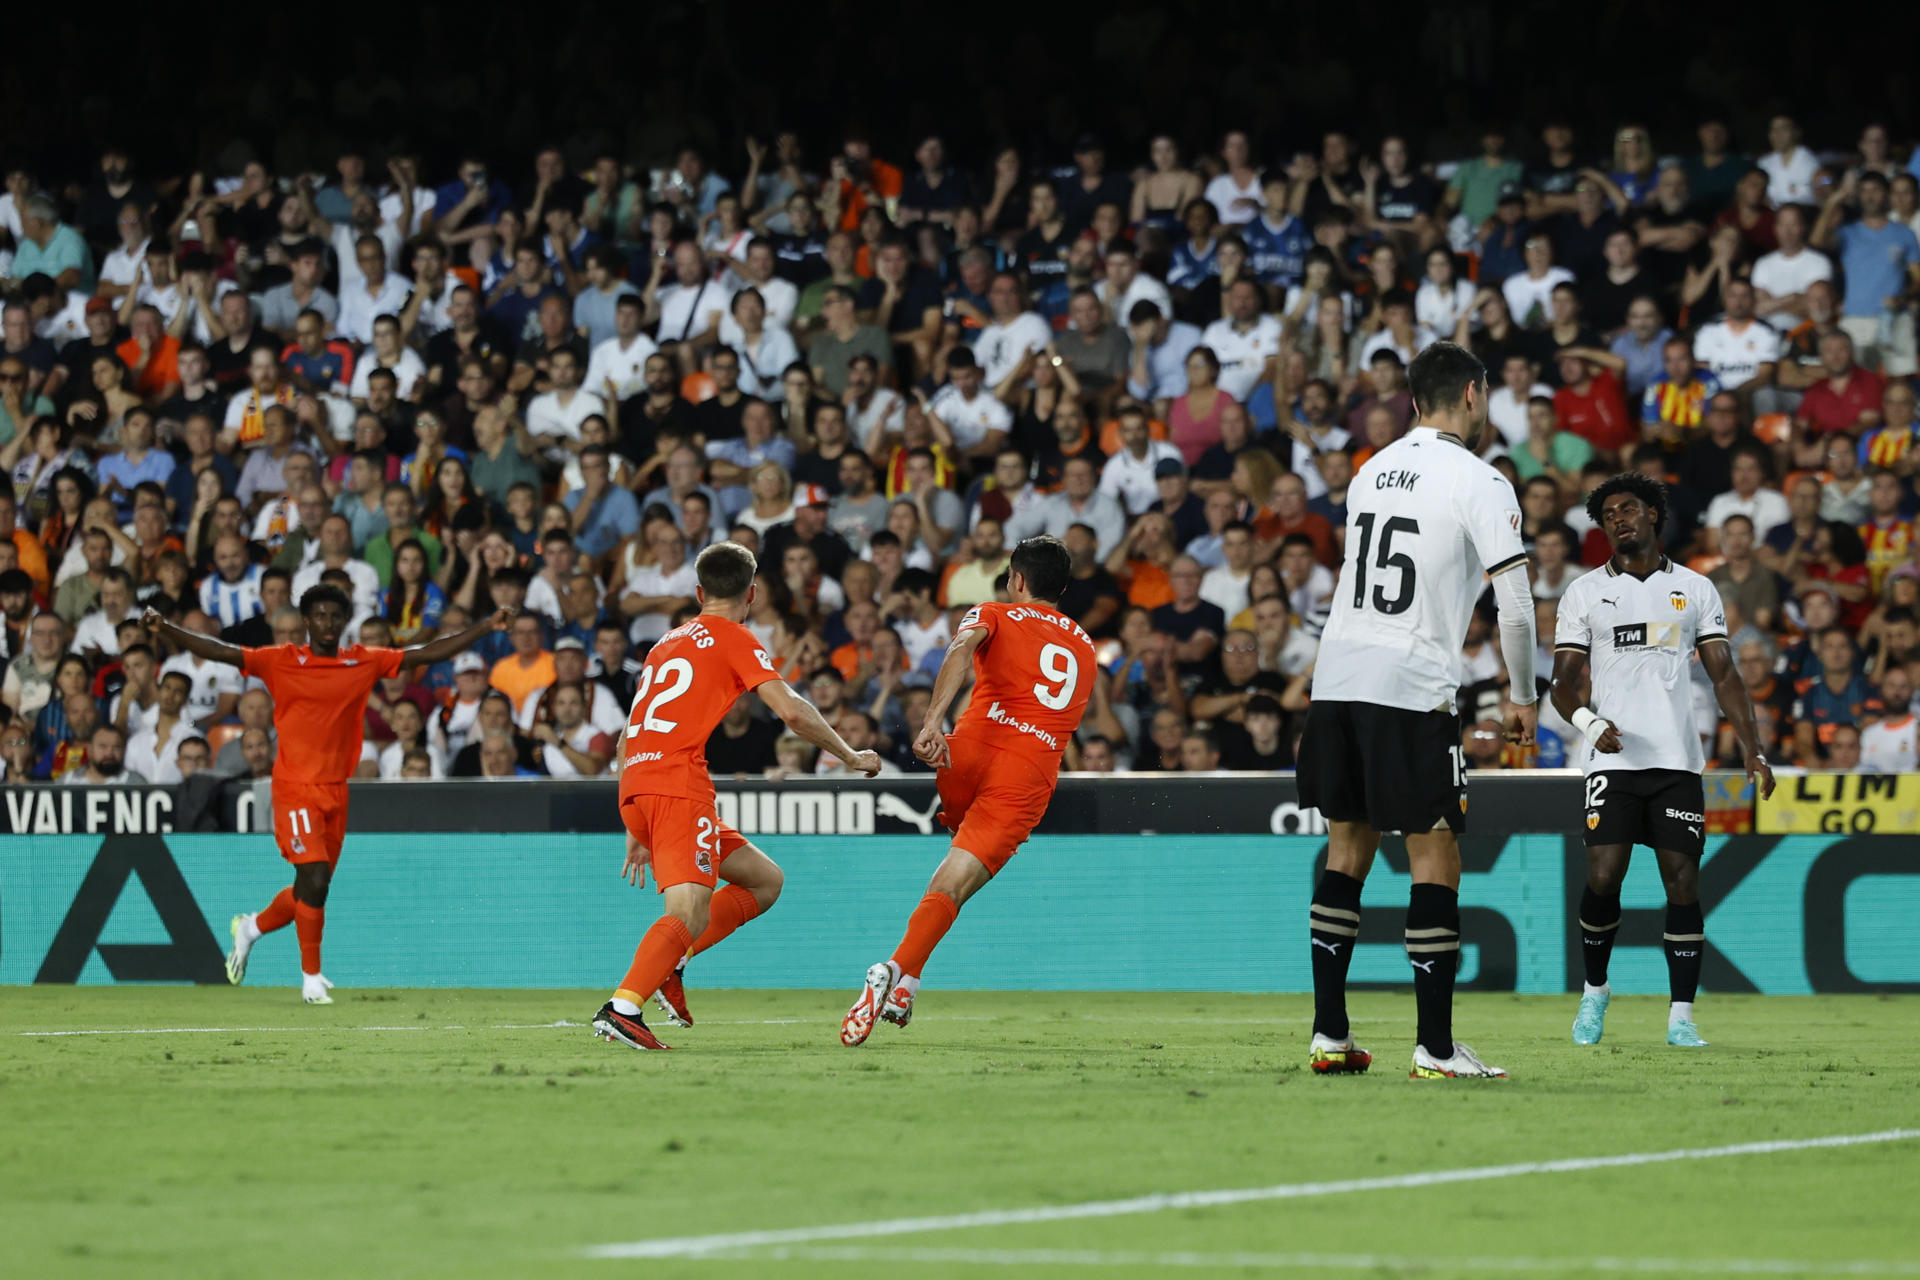 El delantero de la Real Sociedad Carlos Fernández (3i) celebra el primer gol  ante el Valencia, durante el encuentro de la jornada 7 de LaLiga EA Sports entre Valencia CF y Real Sociedad, este miércoles en el estadio de Mestalla en Valencia. EFE/ Biel Aliño